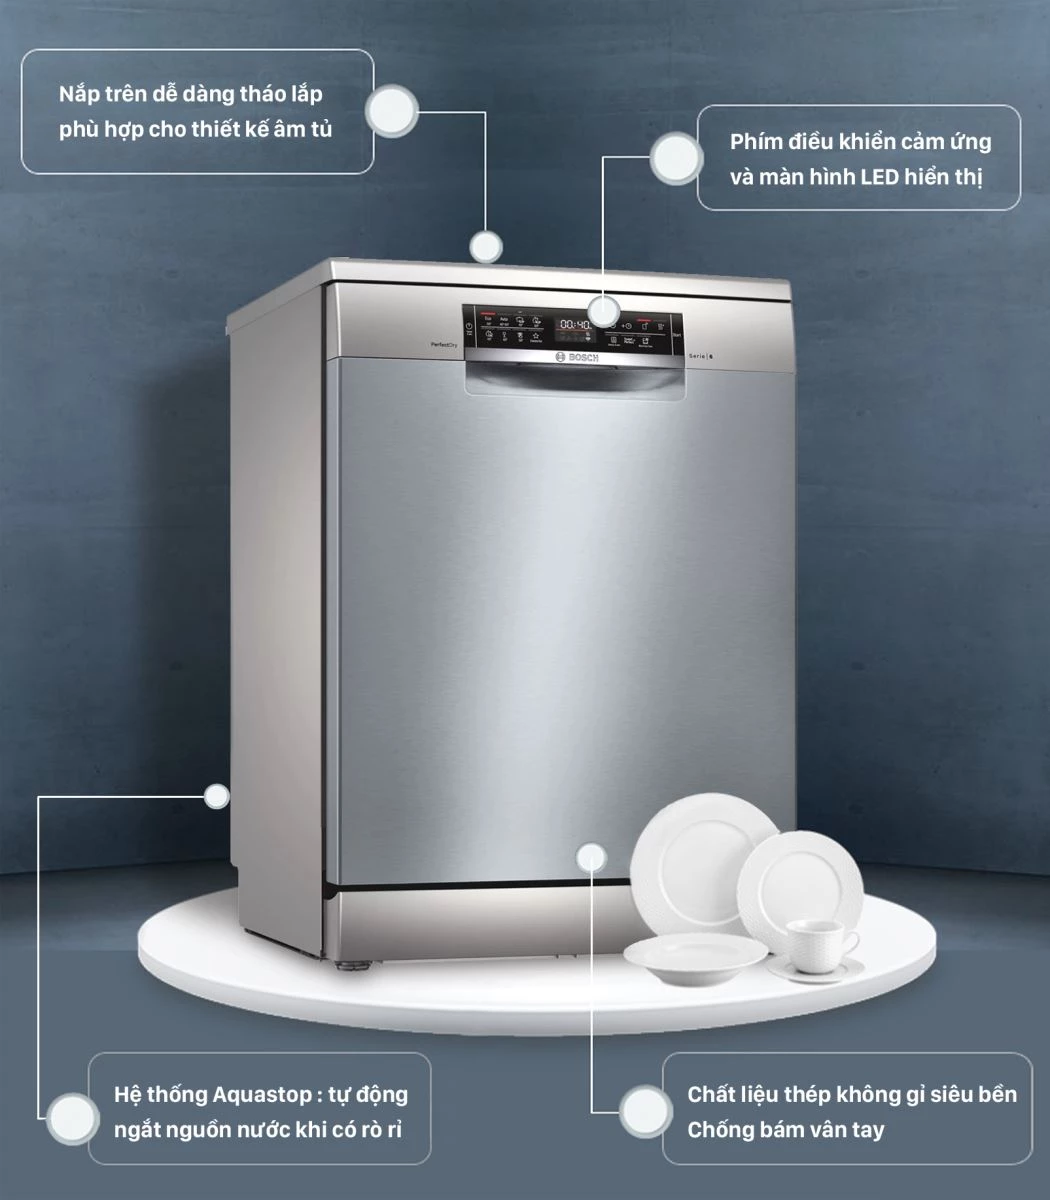 Cùng Bếp An Toàn chọn các dòng máy rửa chén bát chính hãng giá rẻ cho căn bếp của bạn